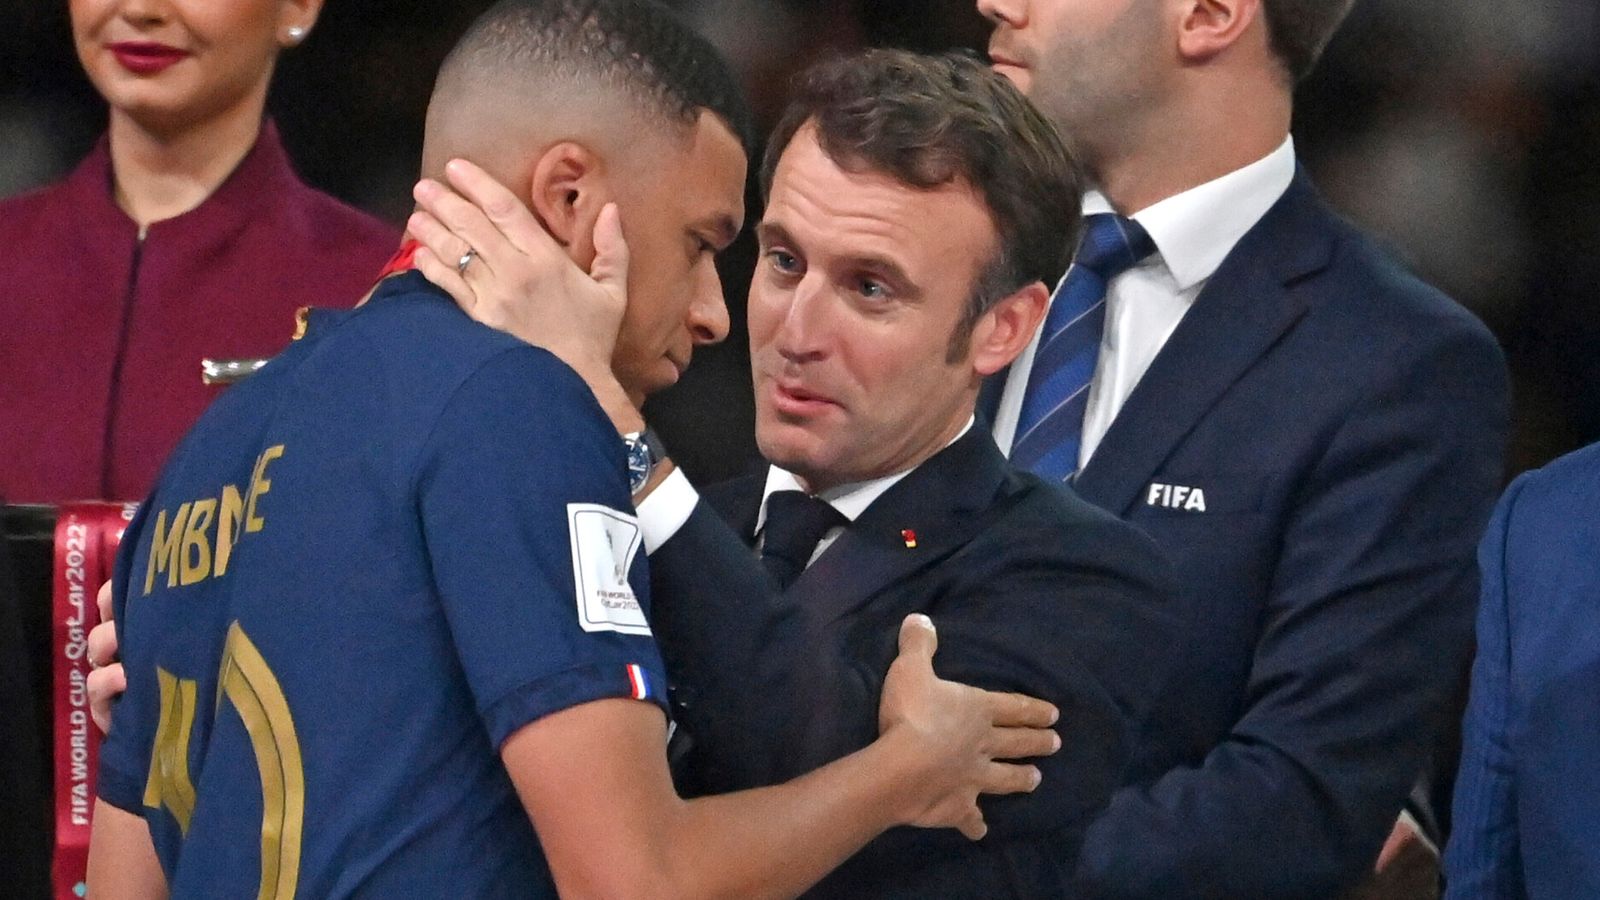 Kylian Mbappe dit que le président français Emmanuel Macron n’a aucune influence sur sa carrière alors que le PSG parle de sortie |  nouvelles du football